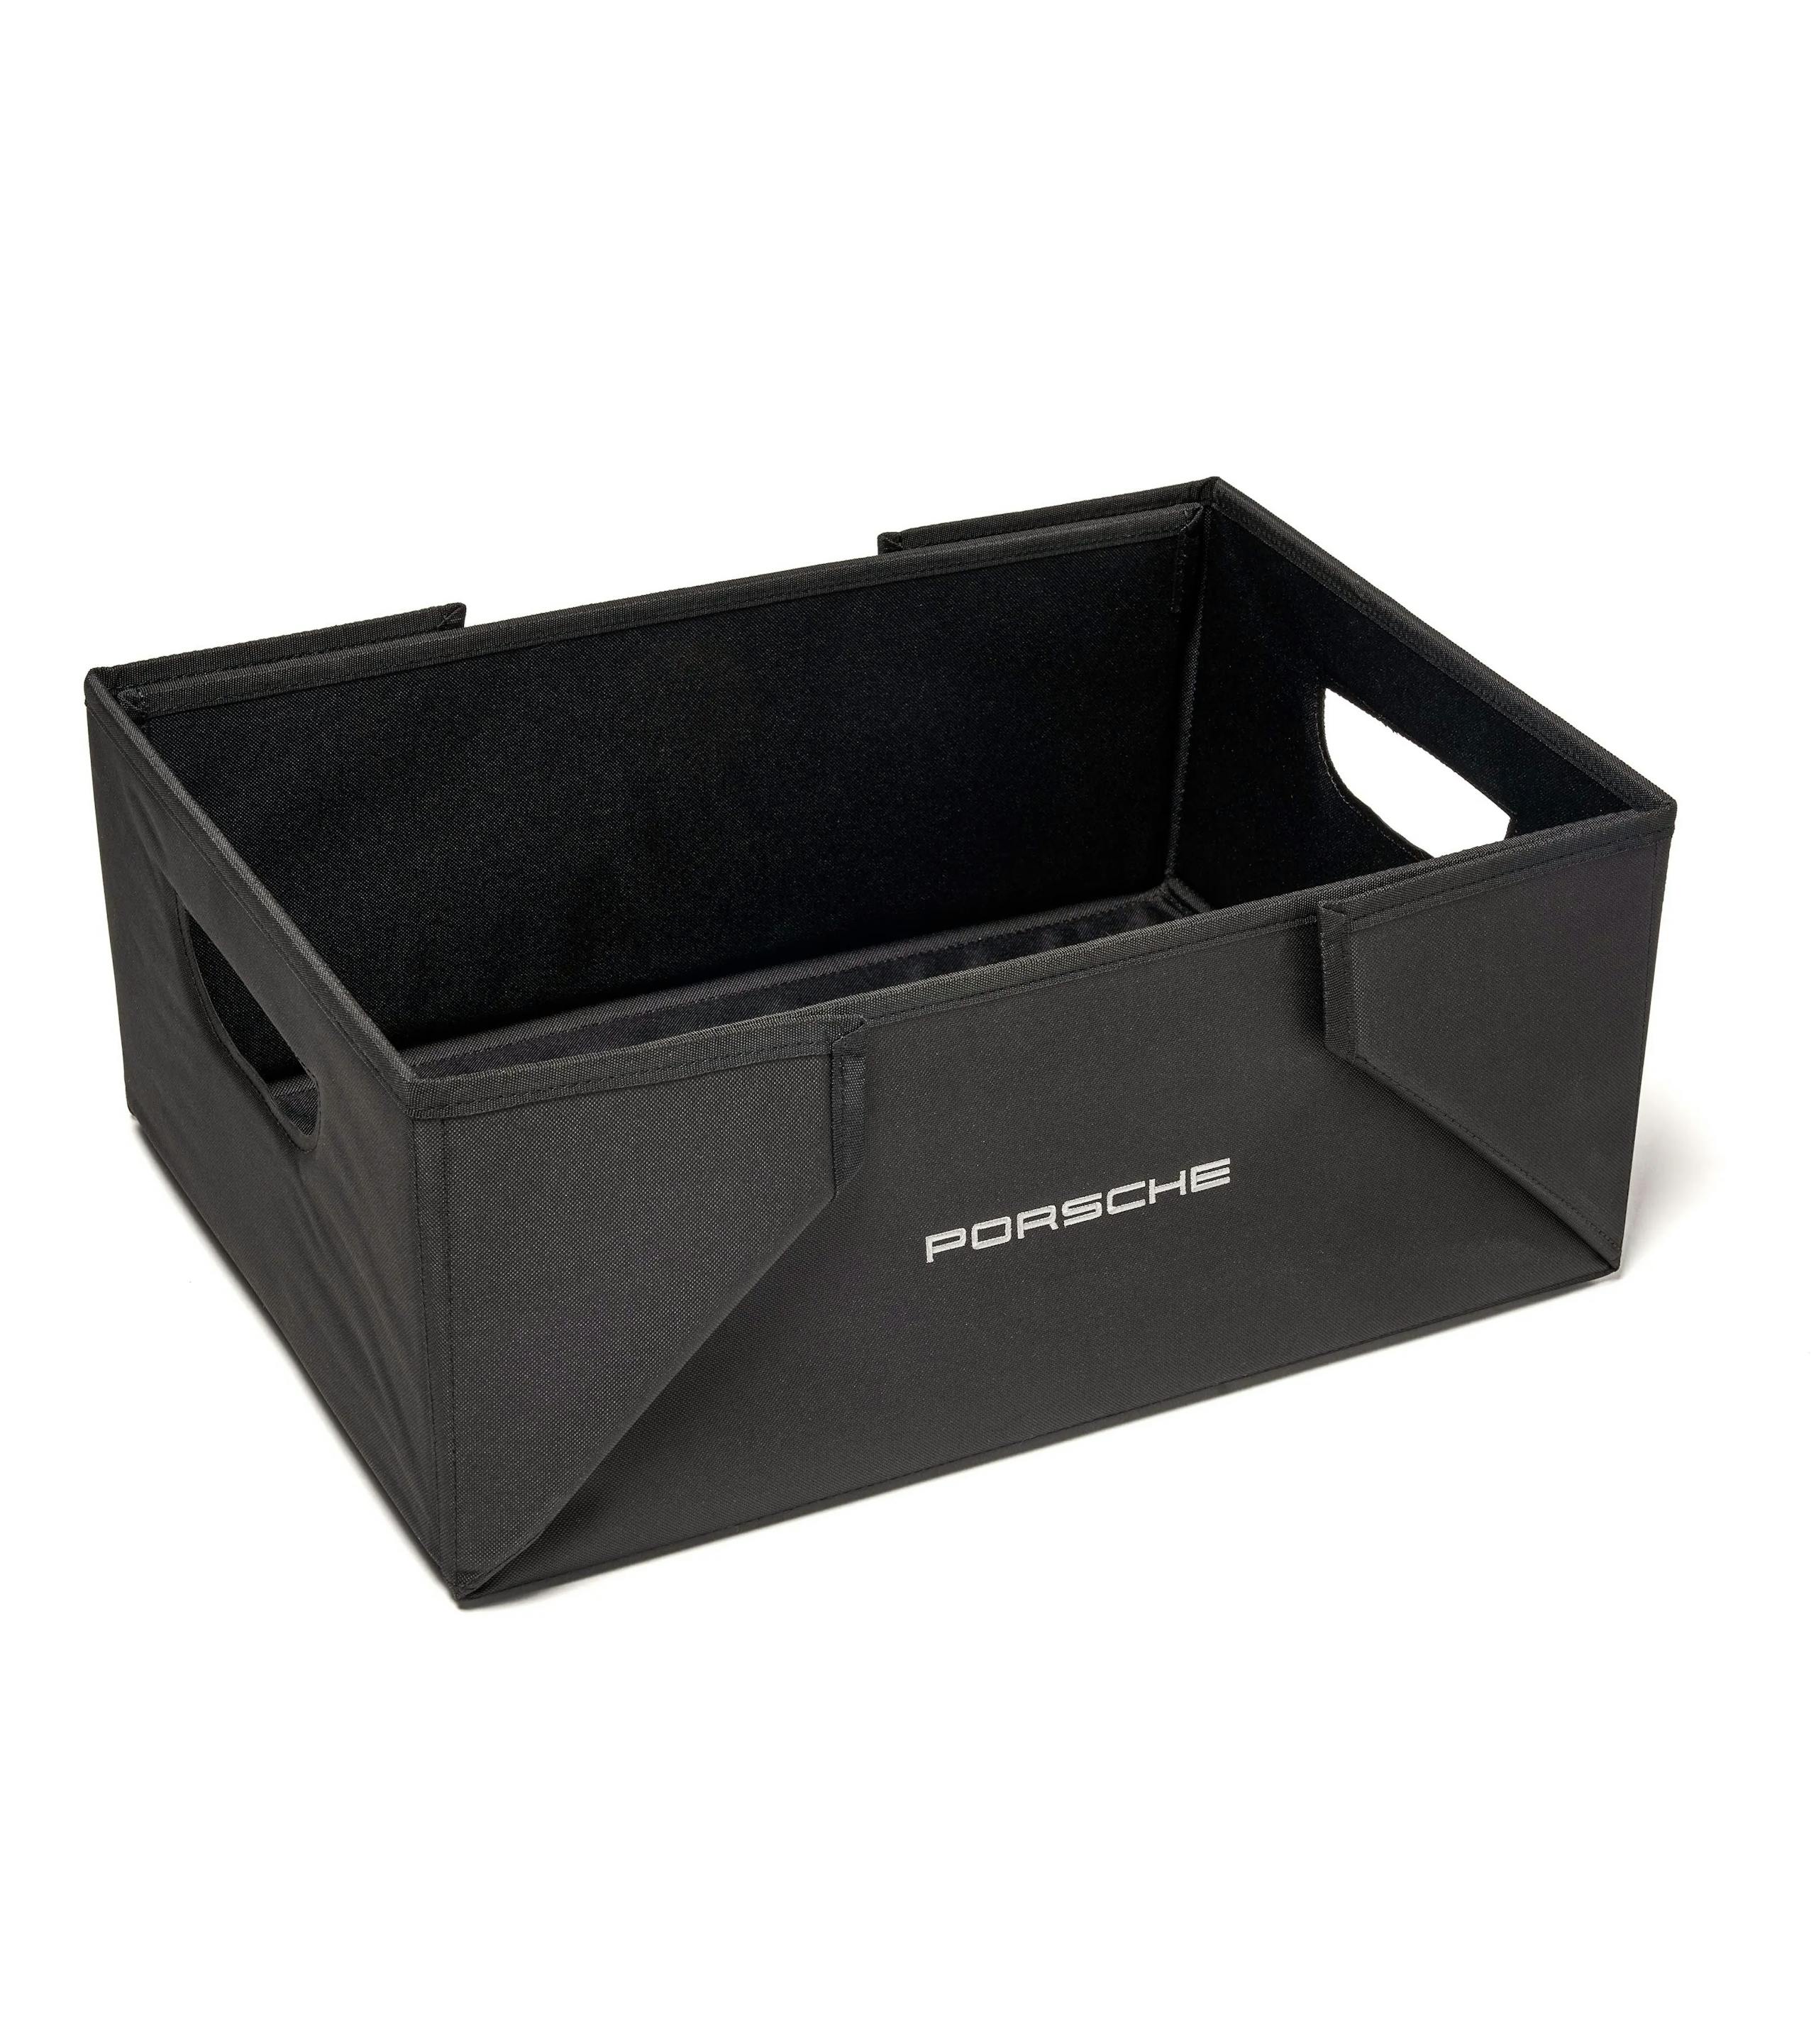 Porsche Folding Luggage Compartment Box